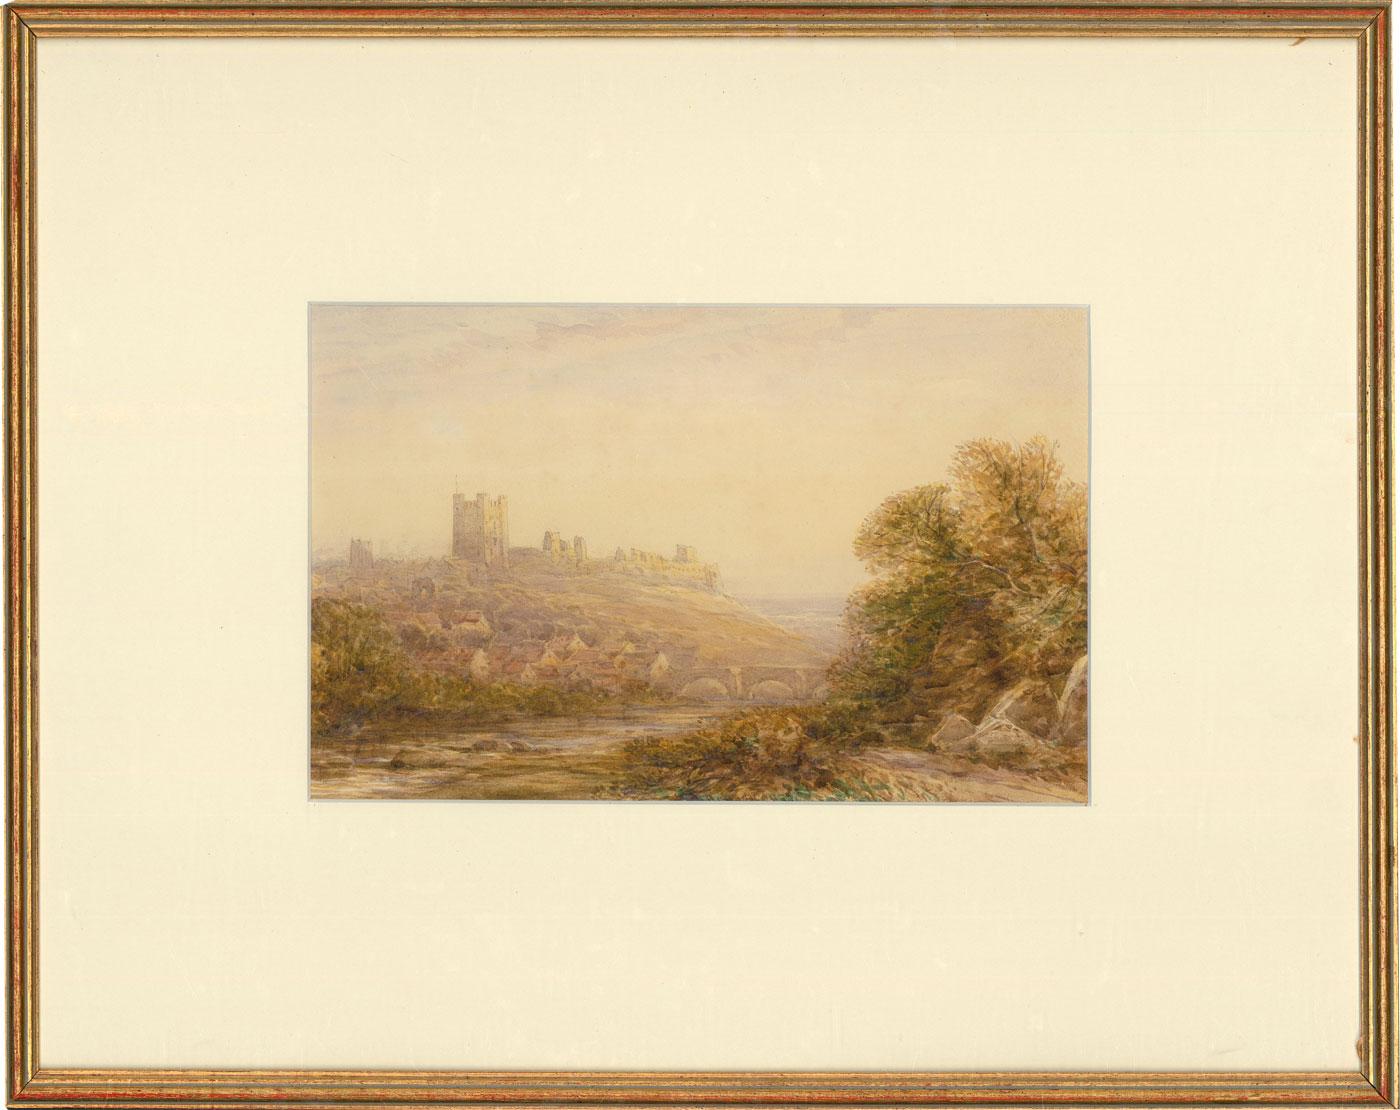 Eine reizvolle Ansicht von Richmond Castle in Yorkshire, England. Der Künstler fängt die weite Landschaft mit dem sich schlängelnden Fluss und dem Dorf im Vordergrund und dem imposanten Schloss auf dem Hügel, der die Szene überragt, ein. Schwach